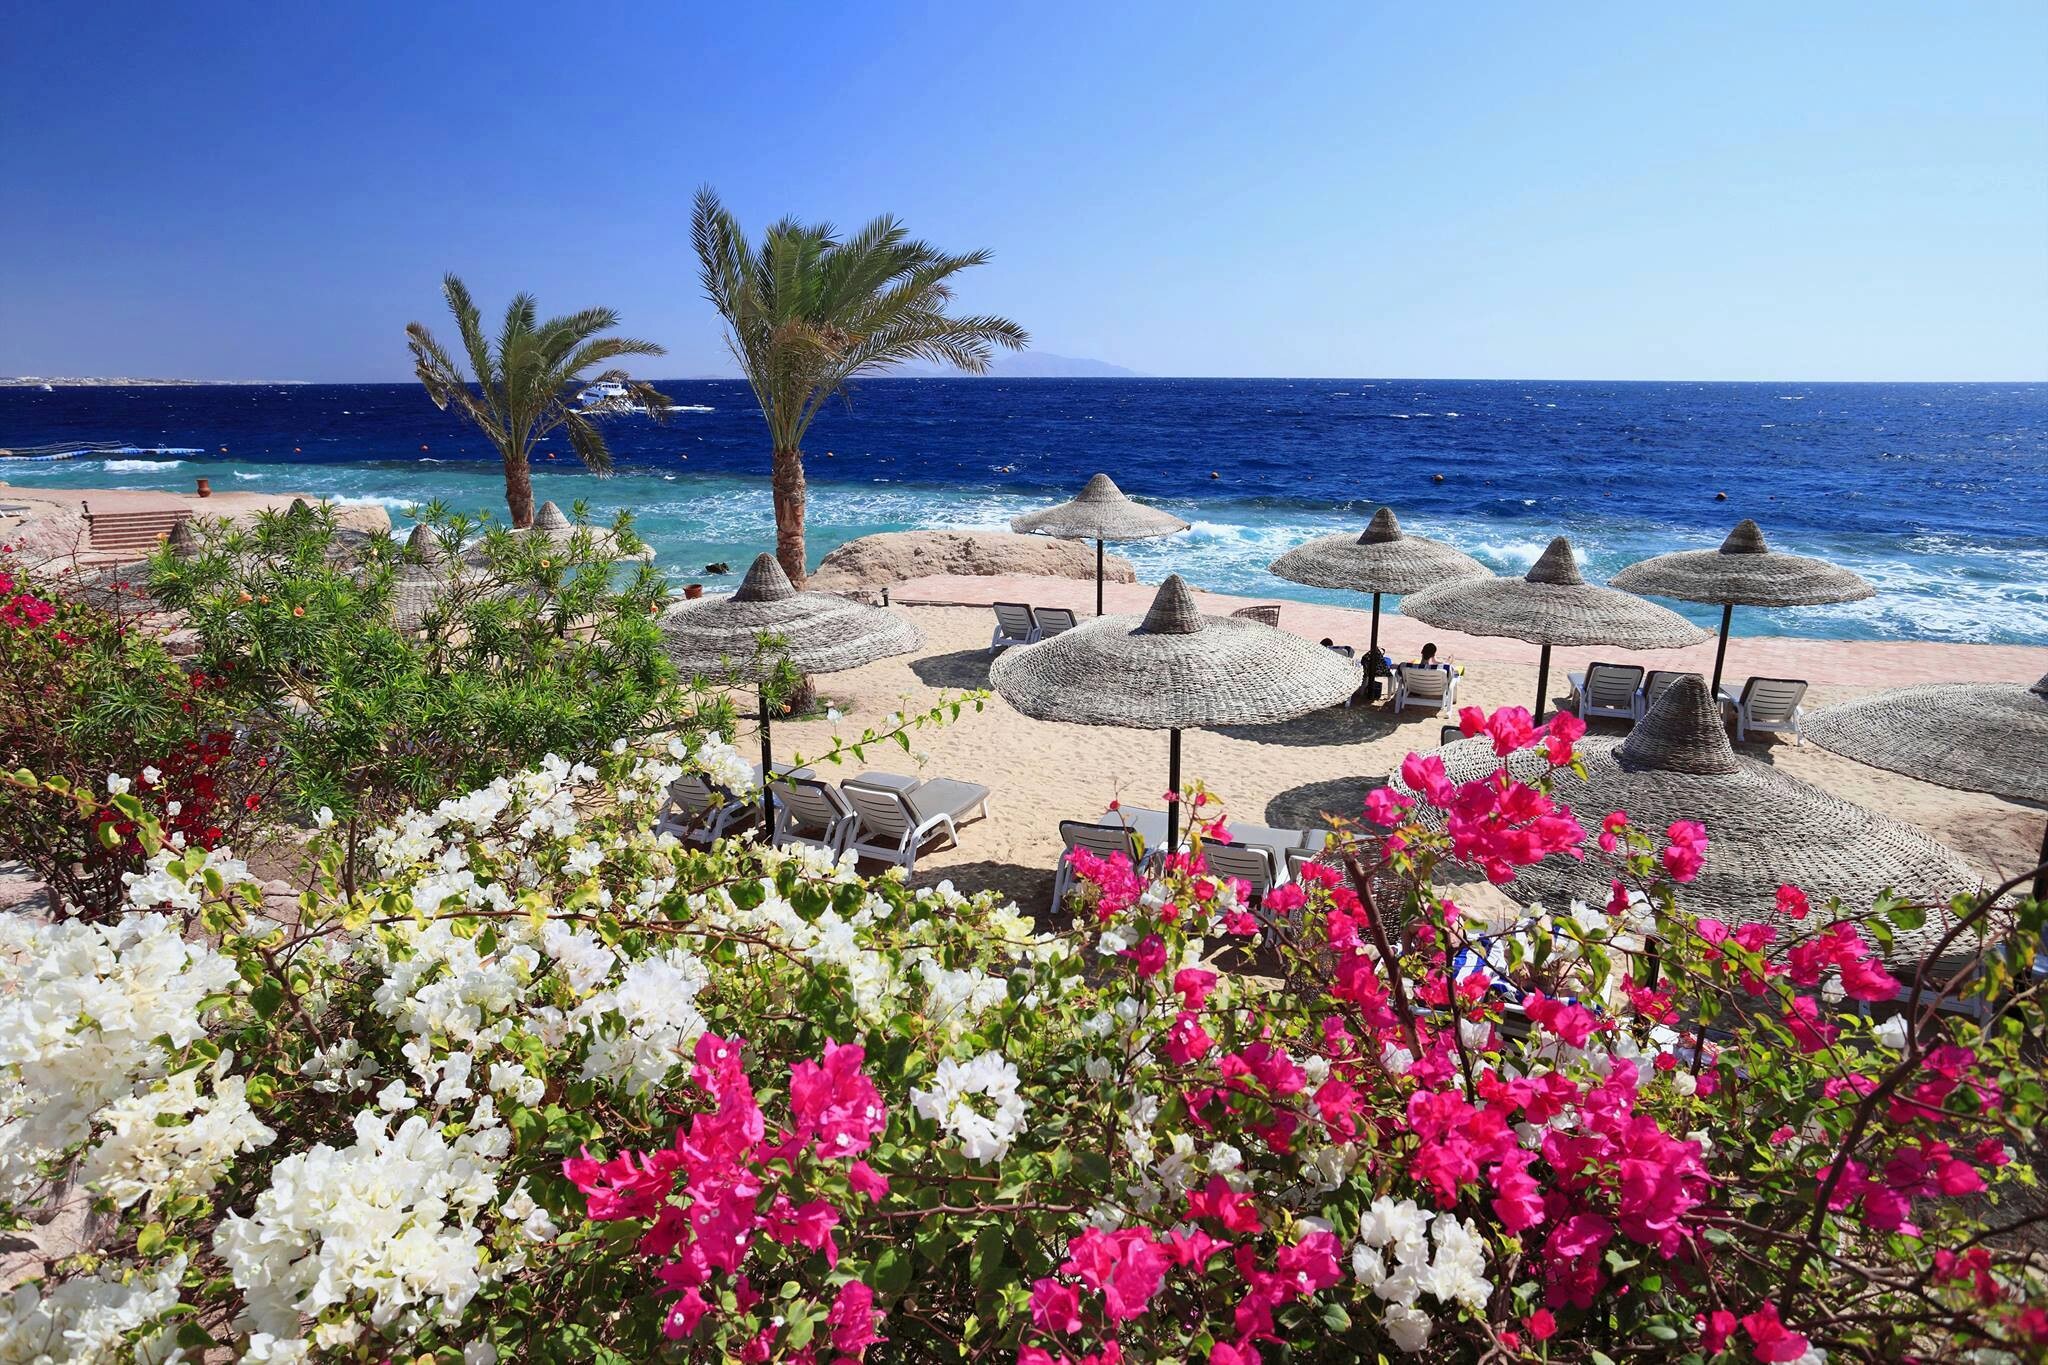 египет фото пляжей и отелей